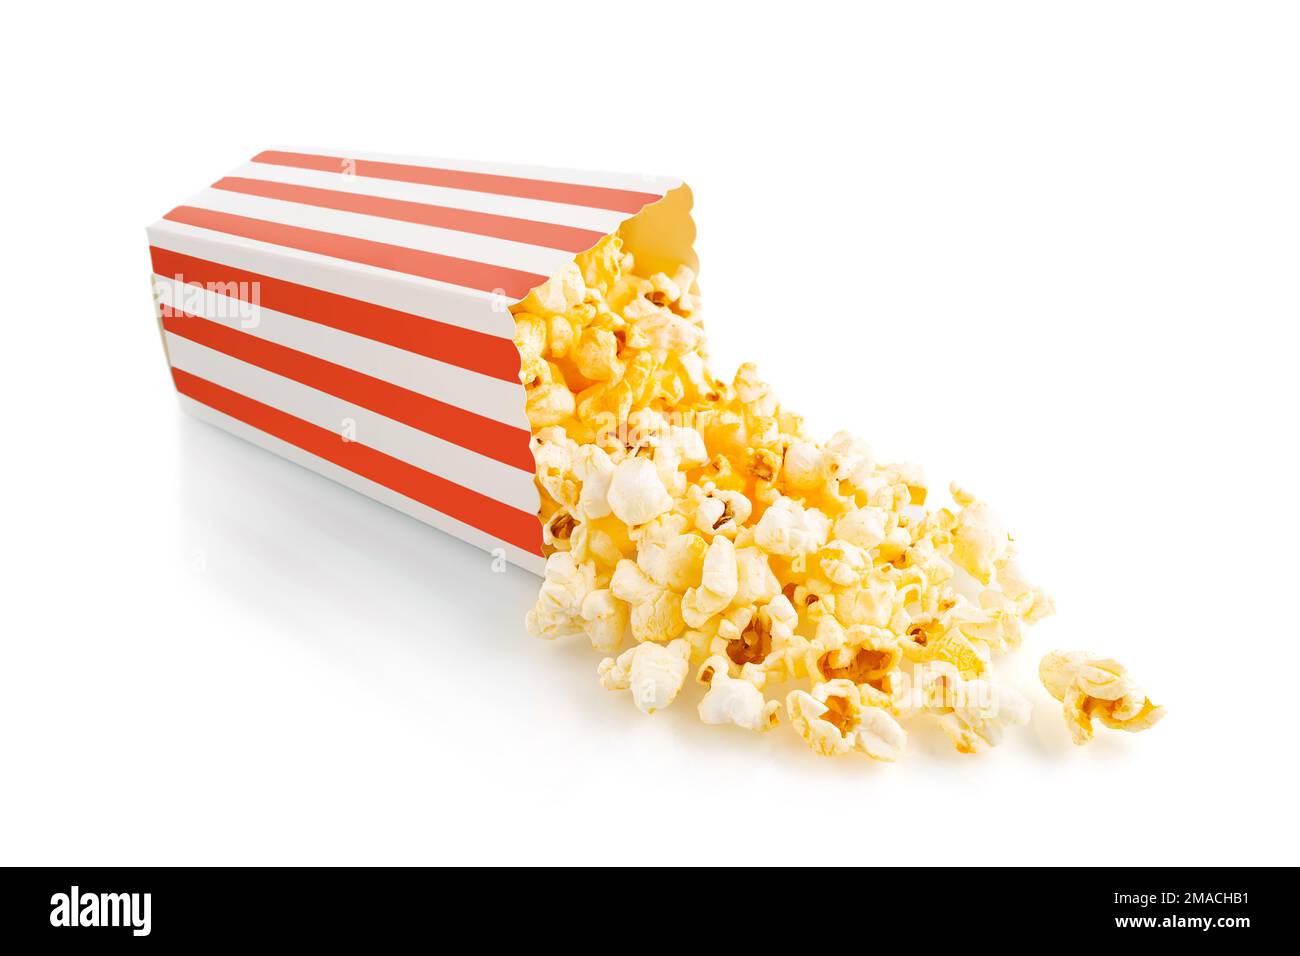 Gustoso popcorn al formaggio che cade da un secchio di cartone a strisce rosse, isolato su sfondo bianco. Dispersione di grani di popcorn. Film, cinema e ingresso Foto Stock